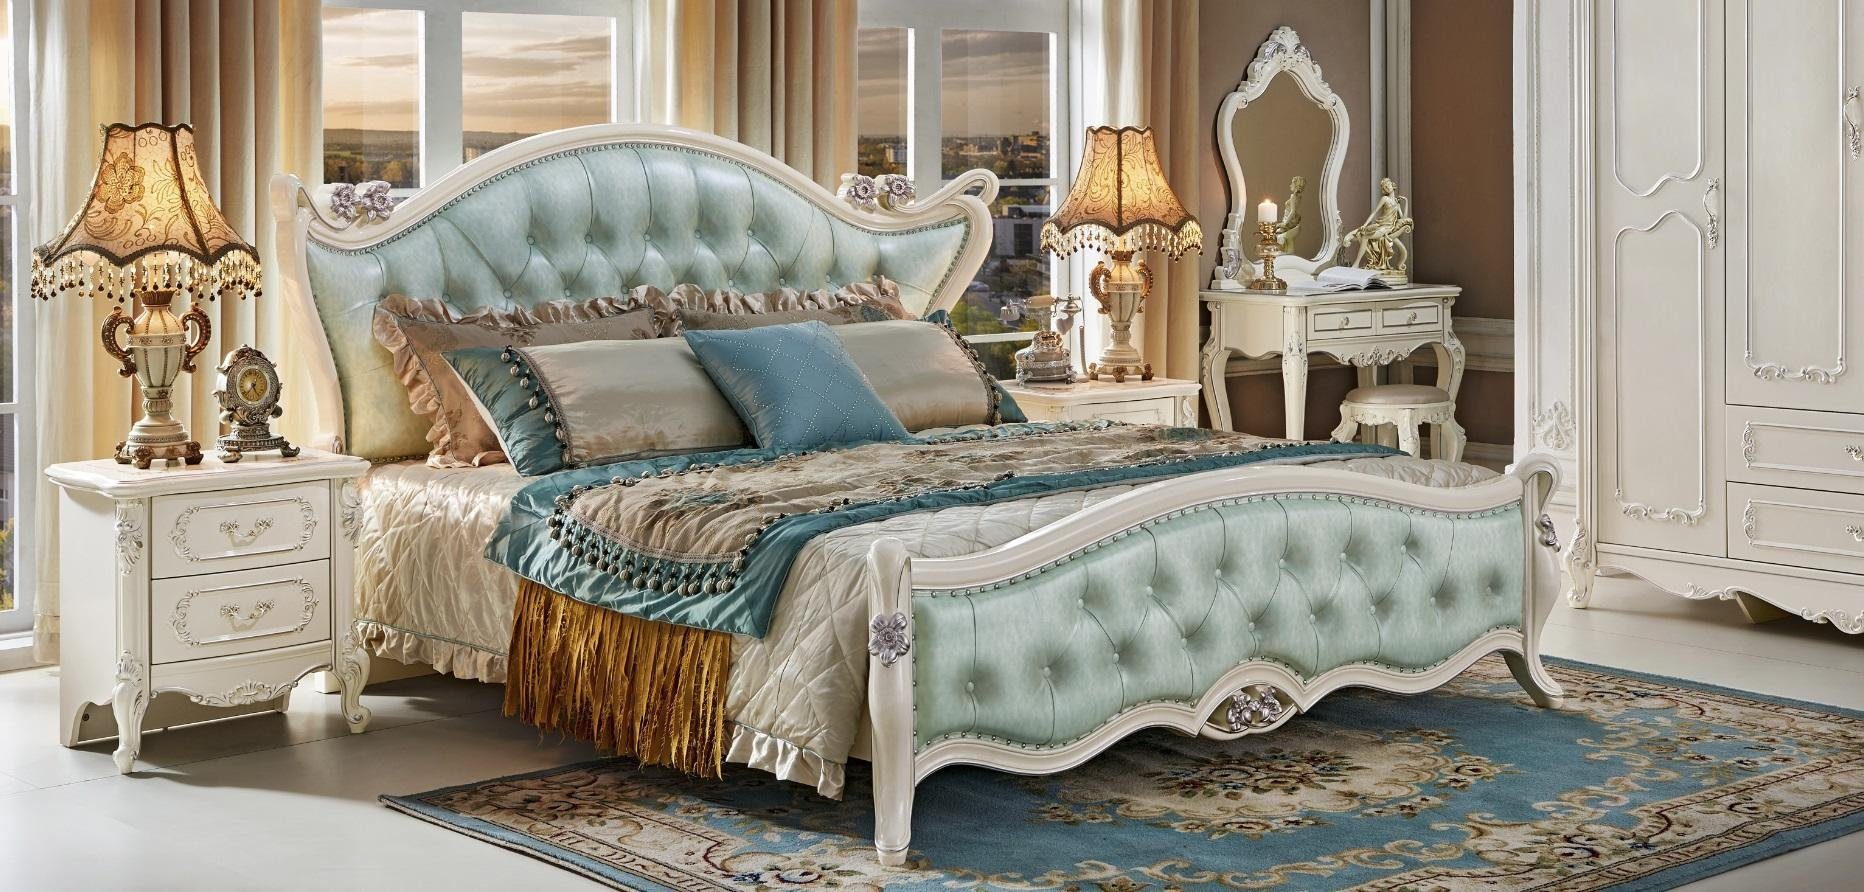 Hotel Palast Chesterfield Luxus Königliches Bett Bett, JVmoebel Leder Betten